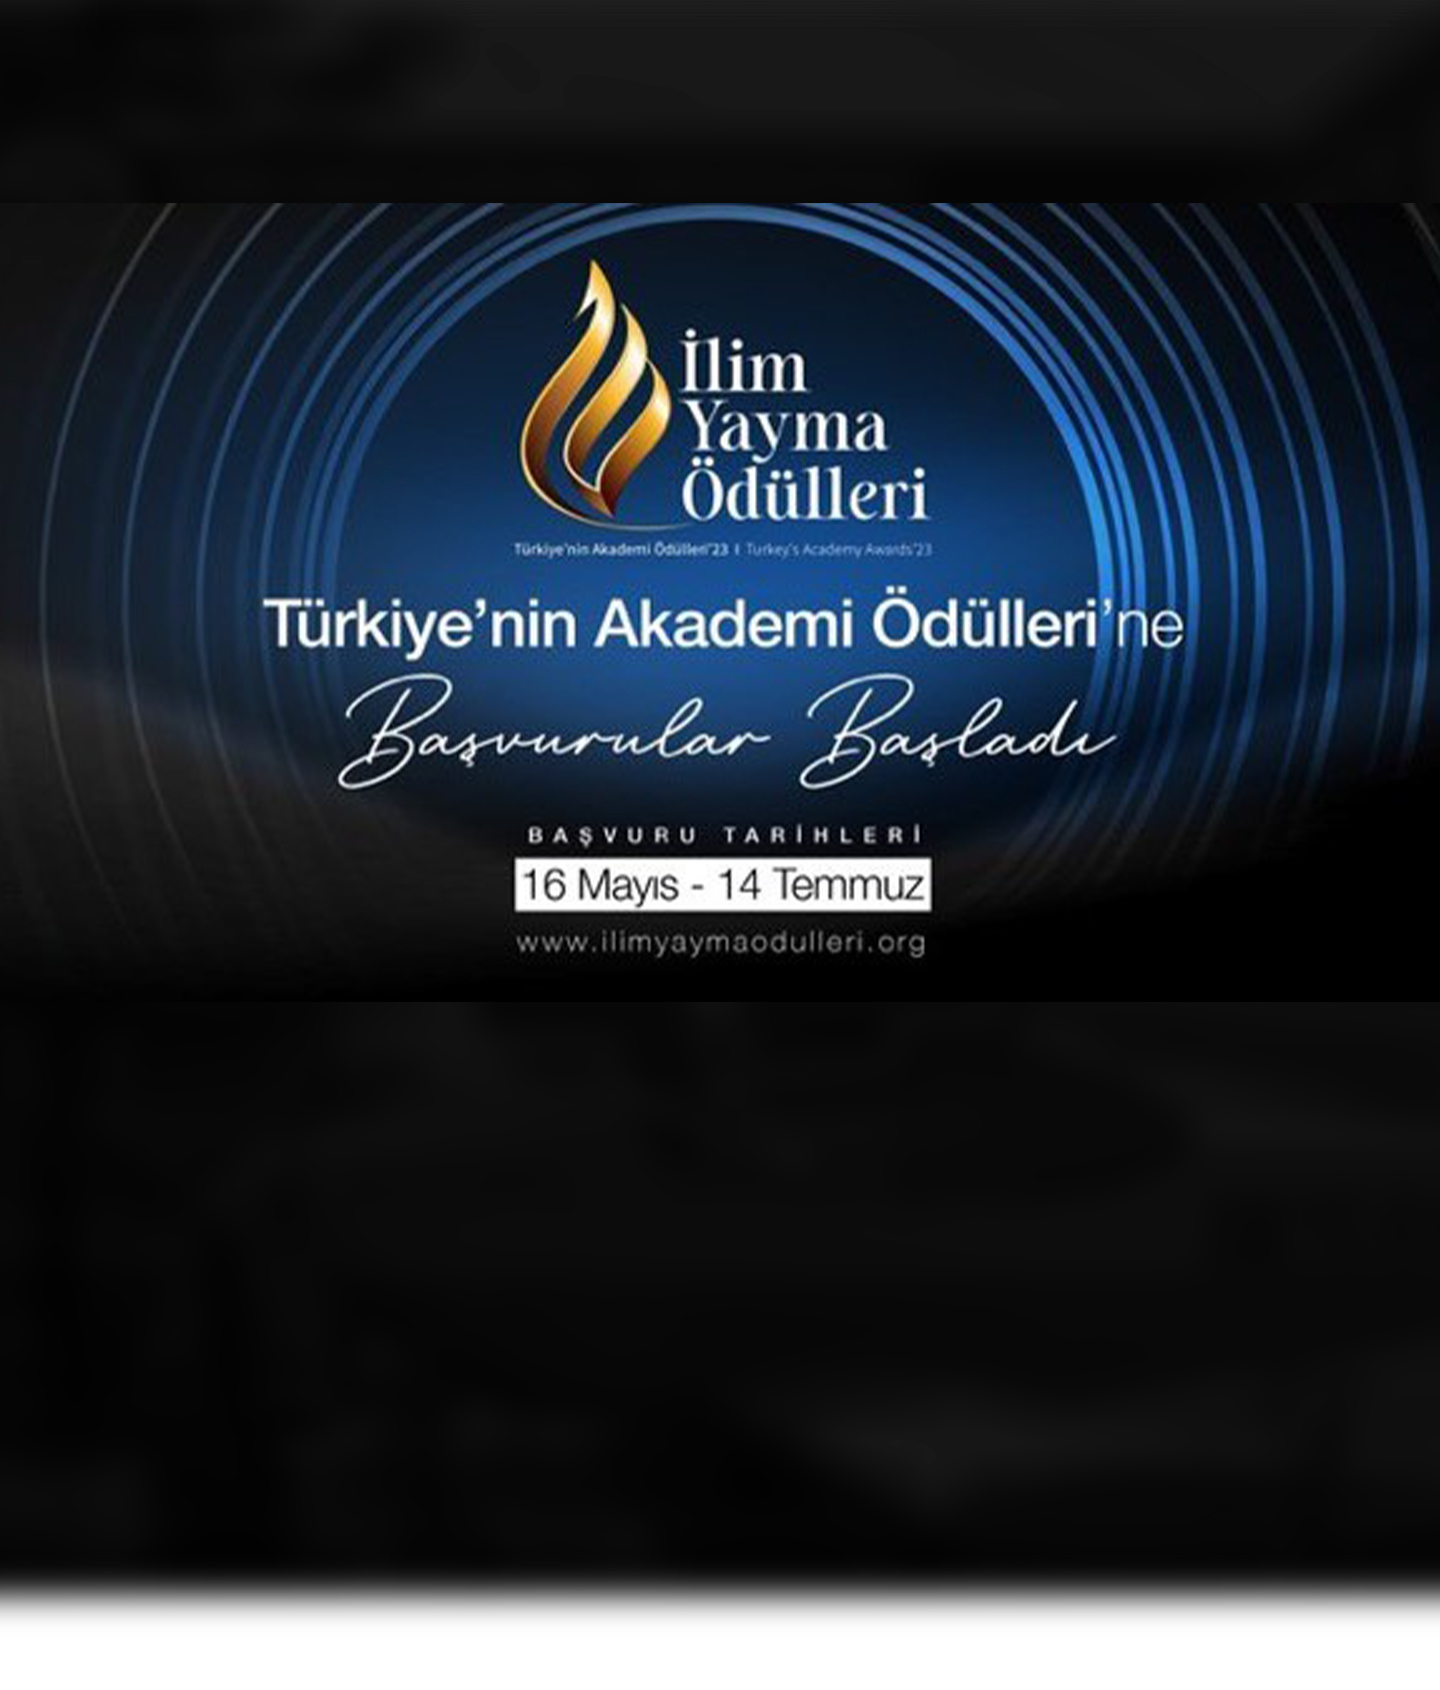 Türkiye’nin Akademi Ödülleri’ne Başvurular Başladı!